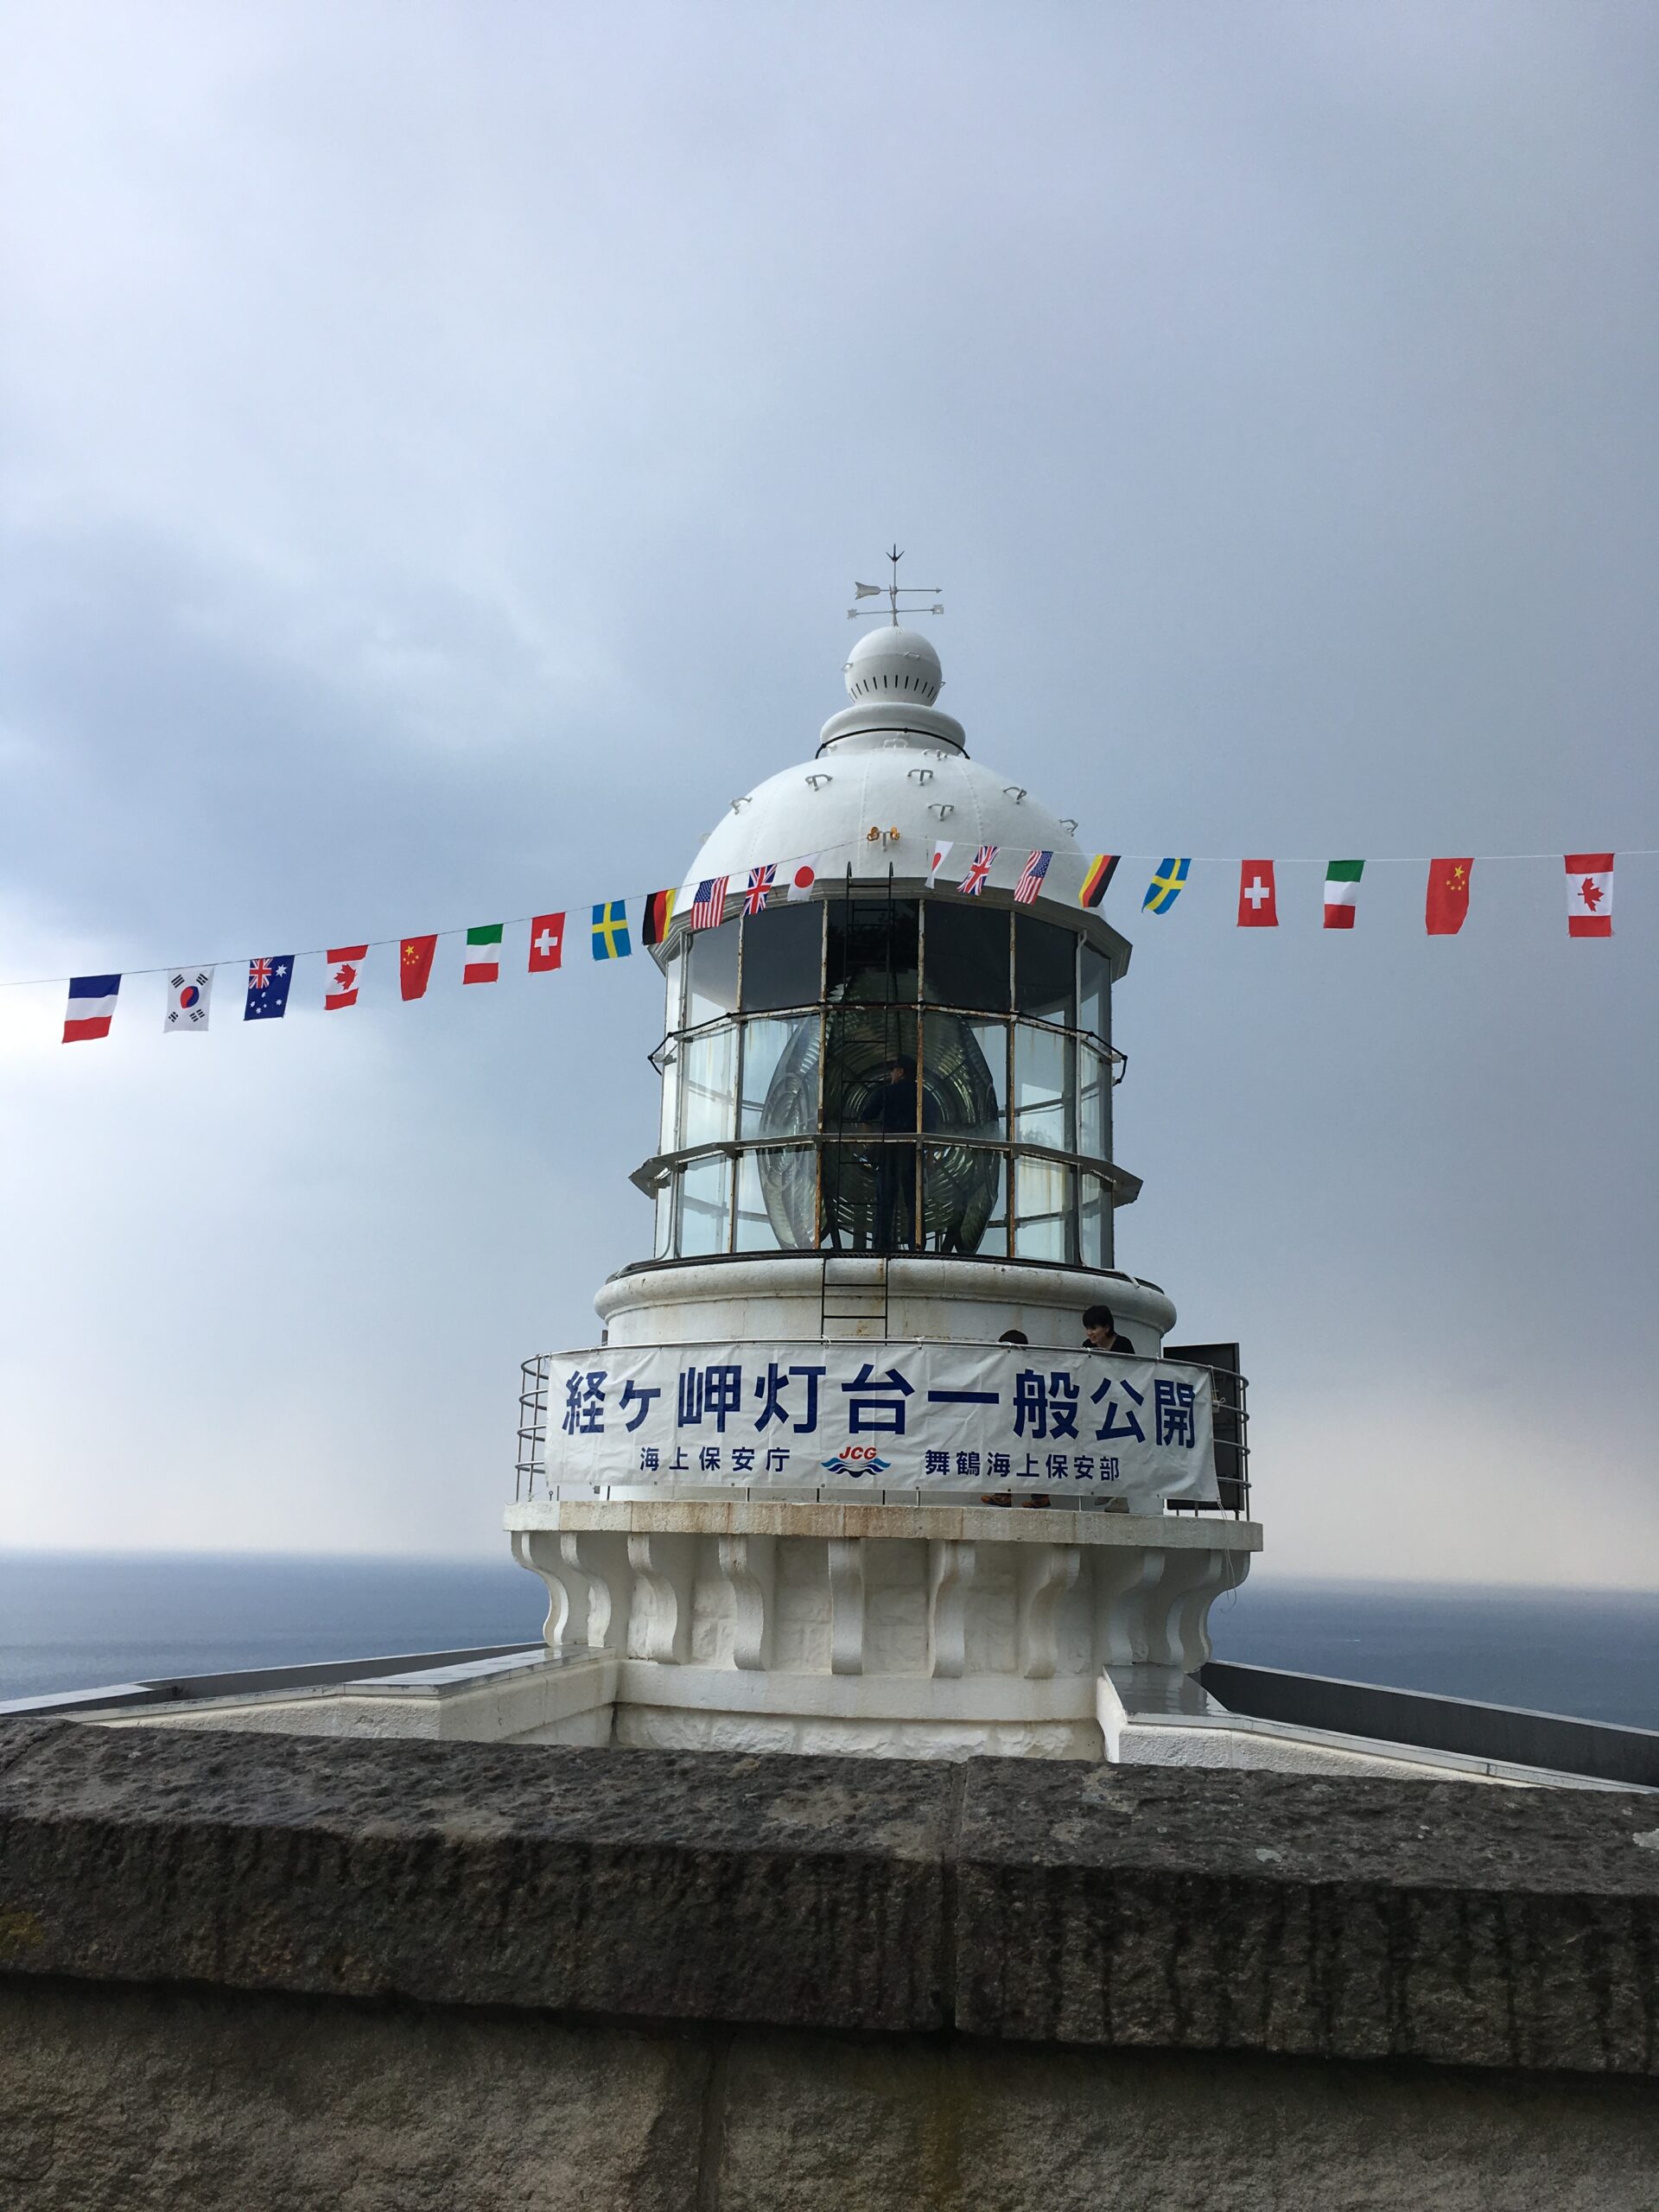 一般公開の日の経ヶ岬灯台